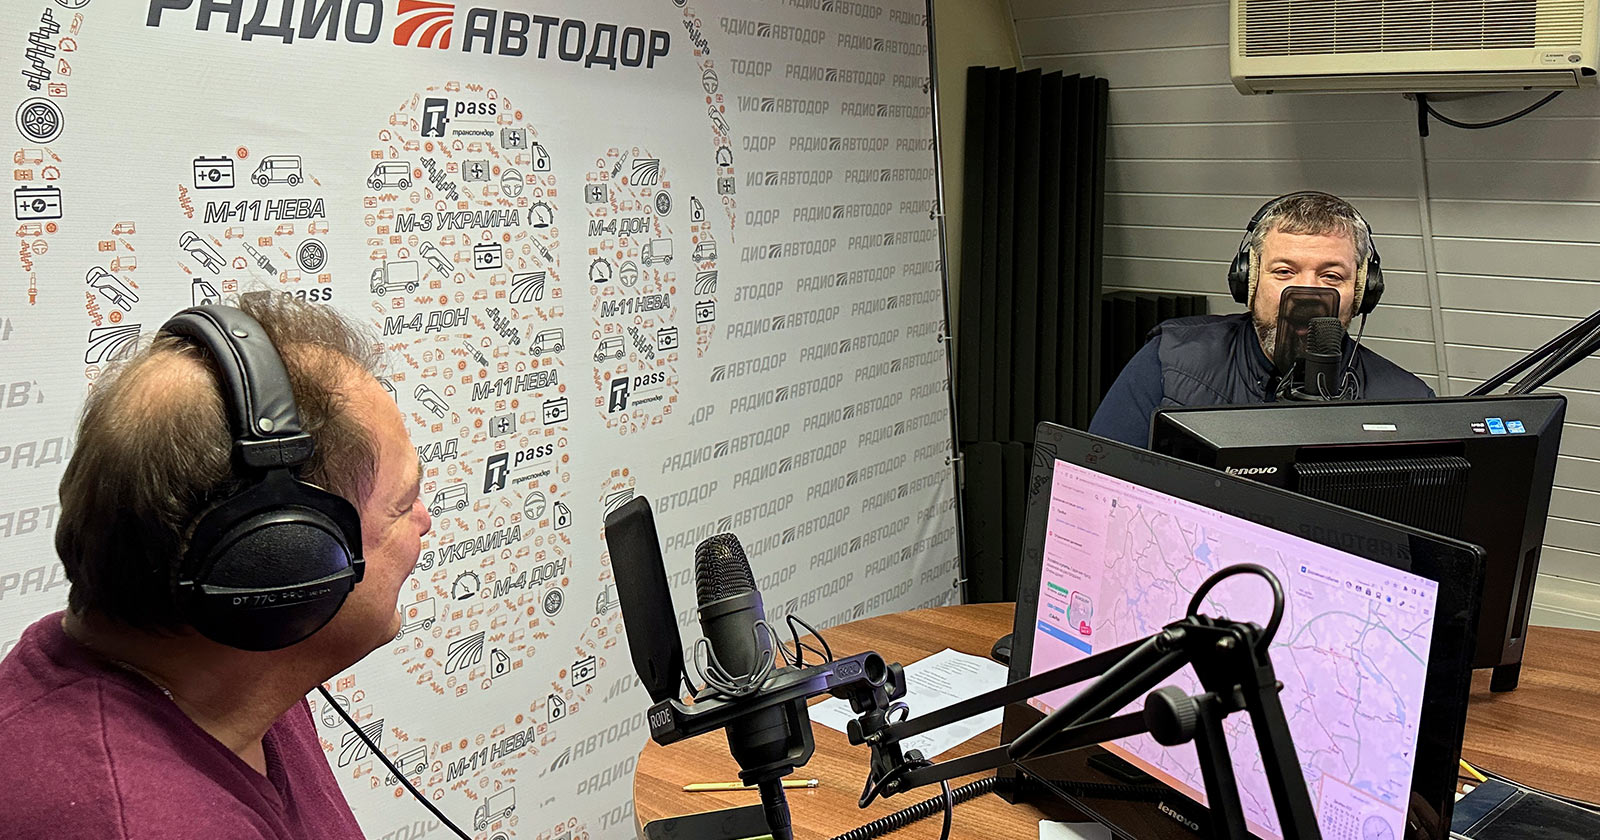 Генеральный директор «ТехноСпарк» Олег Лысак в прямом эфире радио «Автодор»